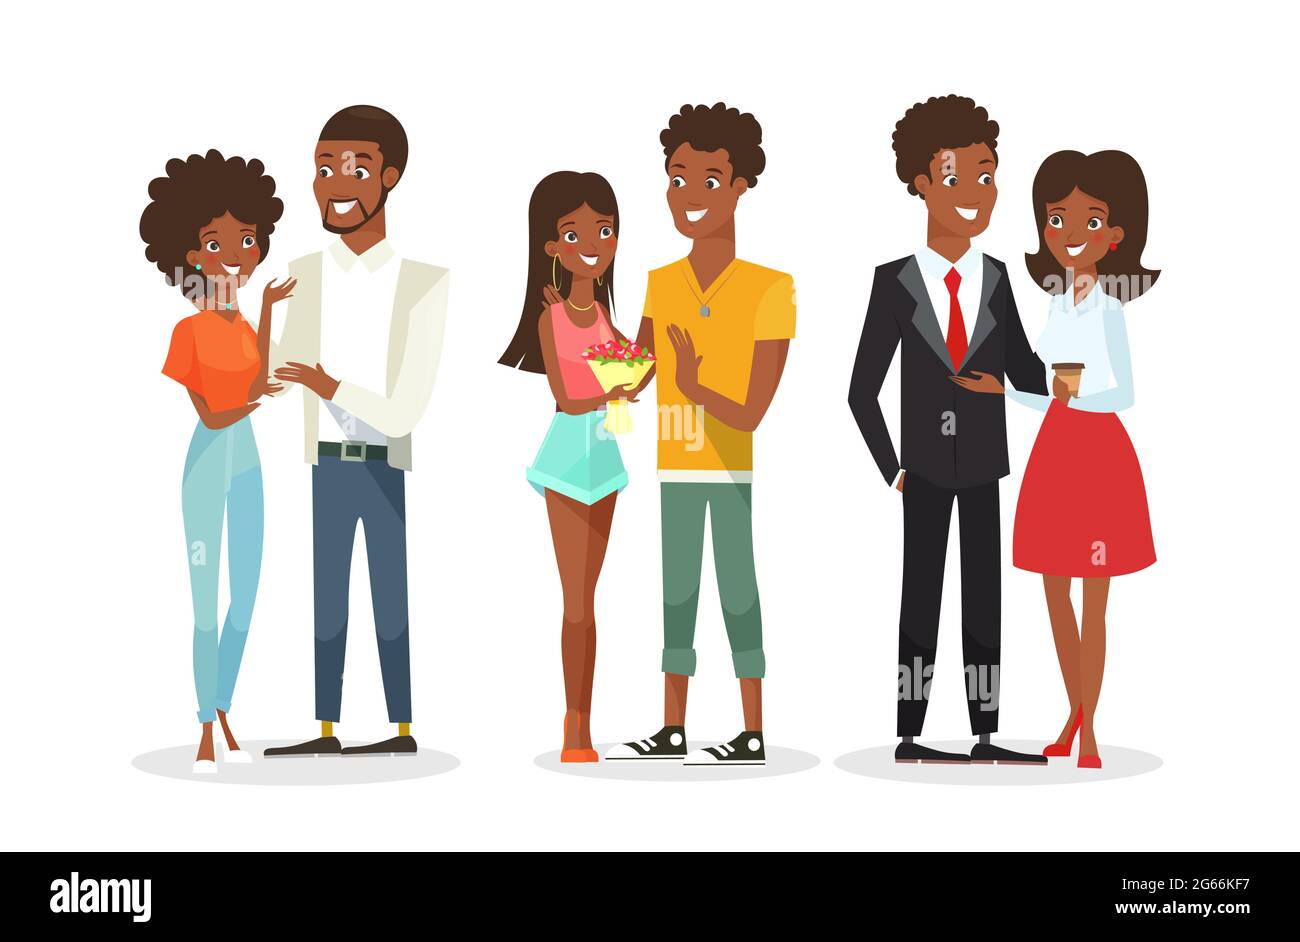 Vektor-Illustration Set von niedlichen afroamerikanischen Paaren auf dem Datum. Junge Frau und Mann. Schwarze Menschen, Familie. Schöner Mann und hübsche Frau in der Wohnung Stock Vektor